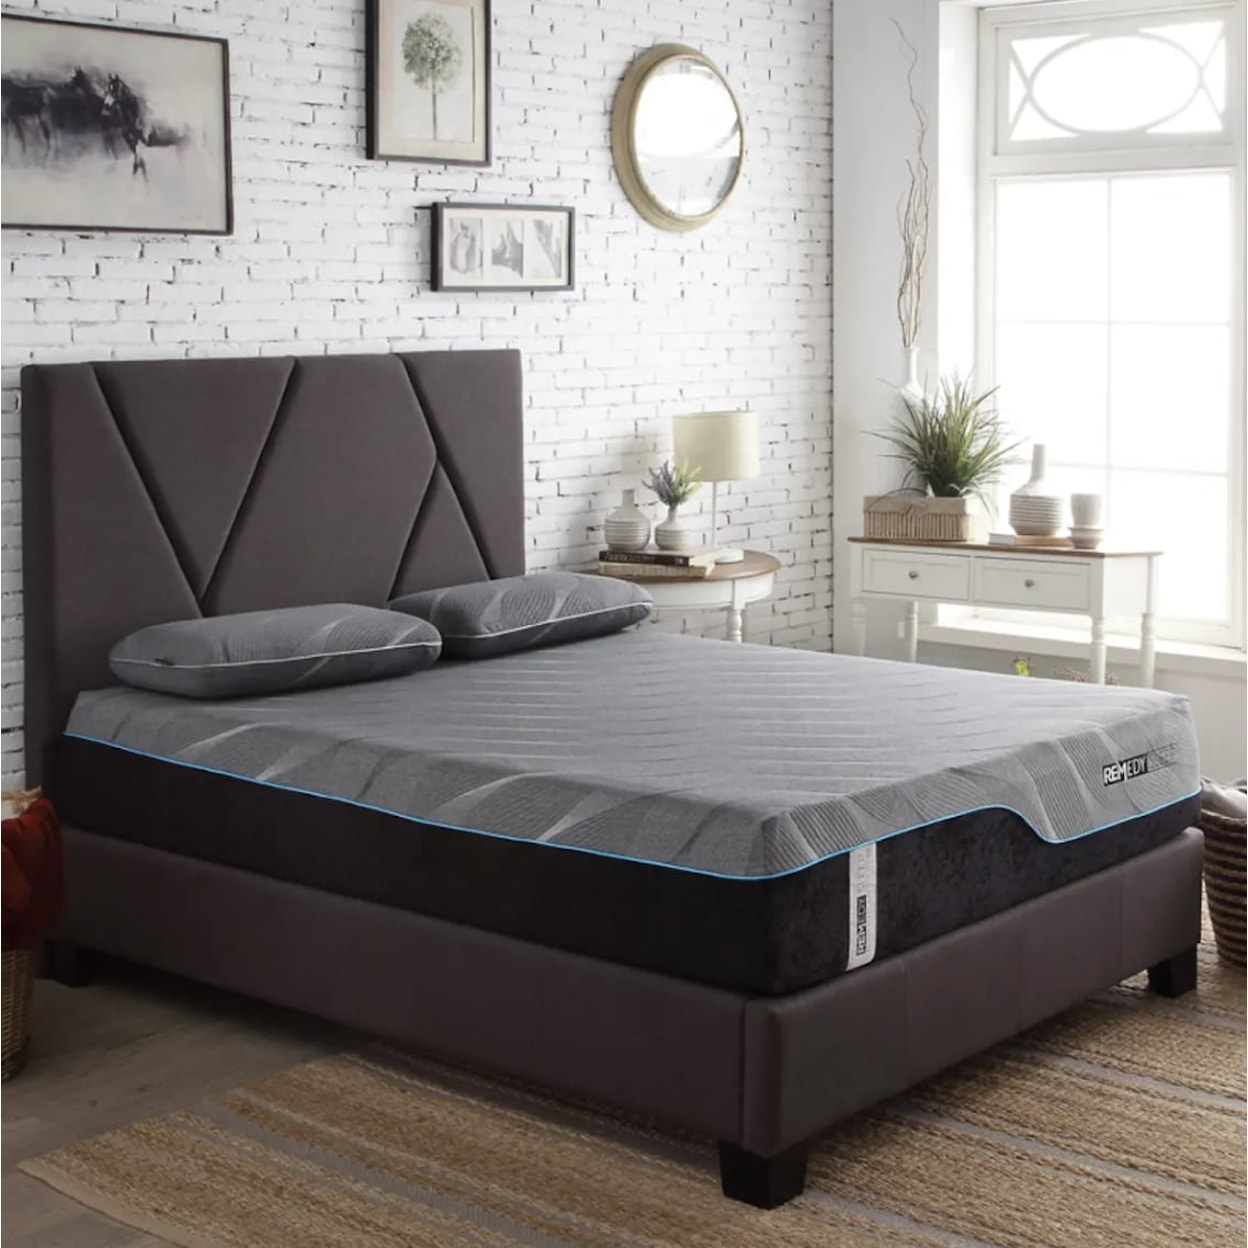 Legends Furniture Modern Beds Upholstered King Bed